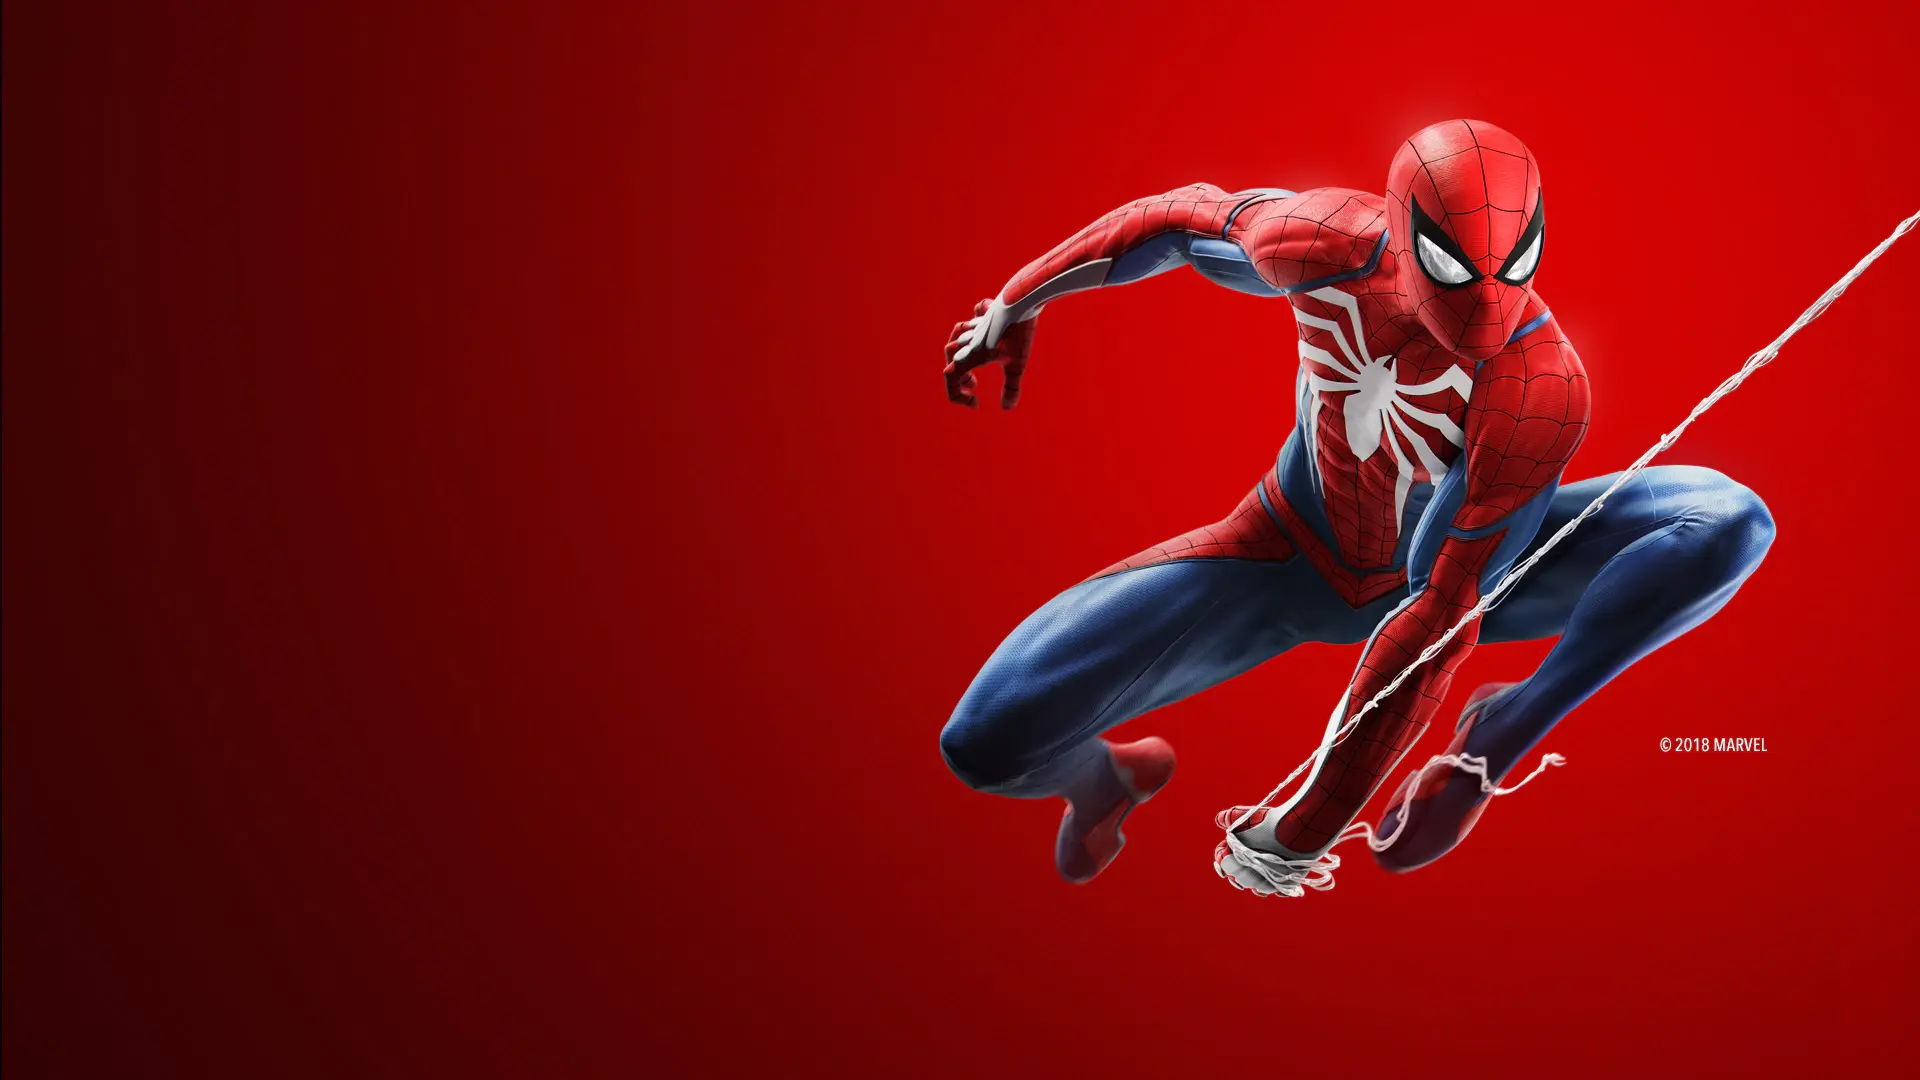 Promoção Marvel's Spider-Man Remastered para PC com GeForce RTX já